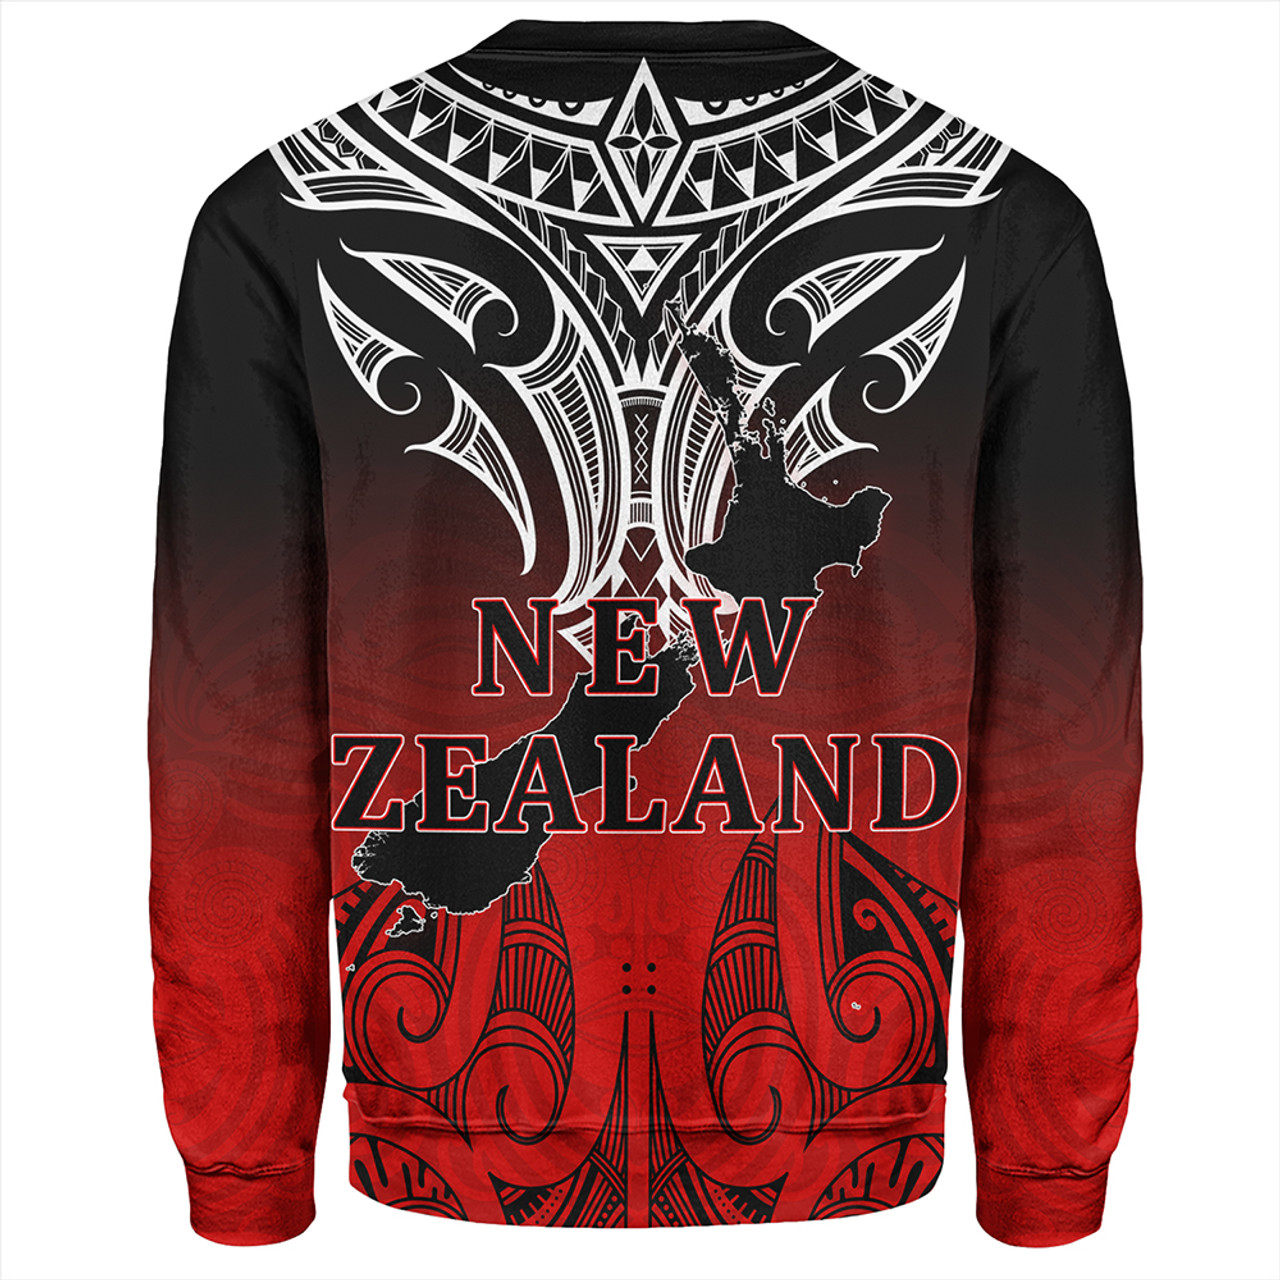 New Zealand Sweatshirt Maori Kiwi Bird Symbols Map